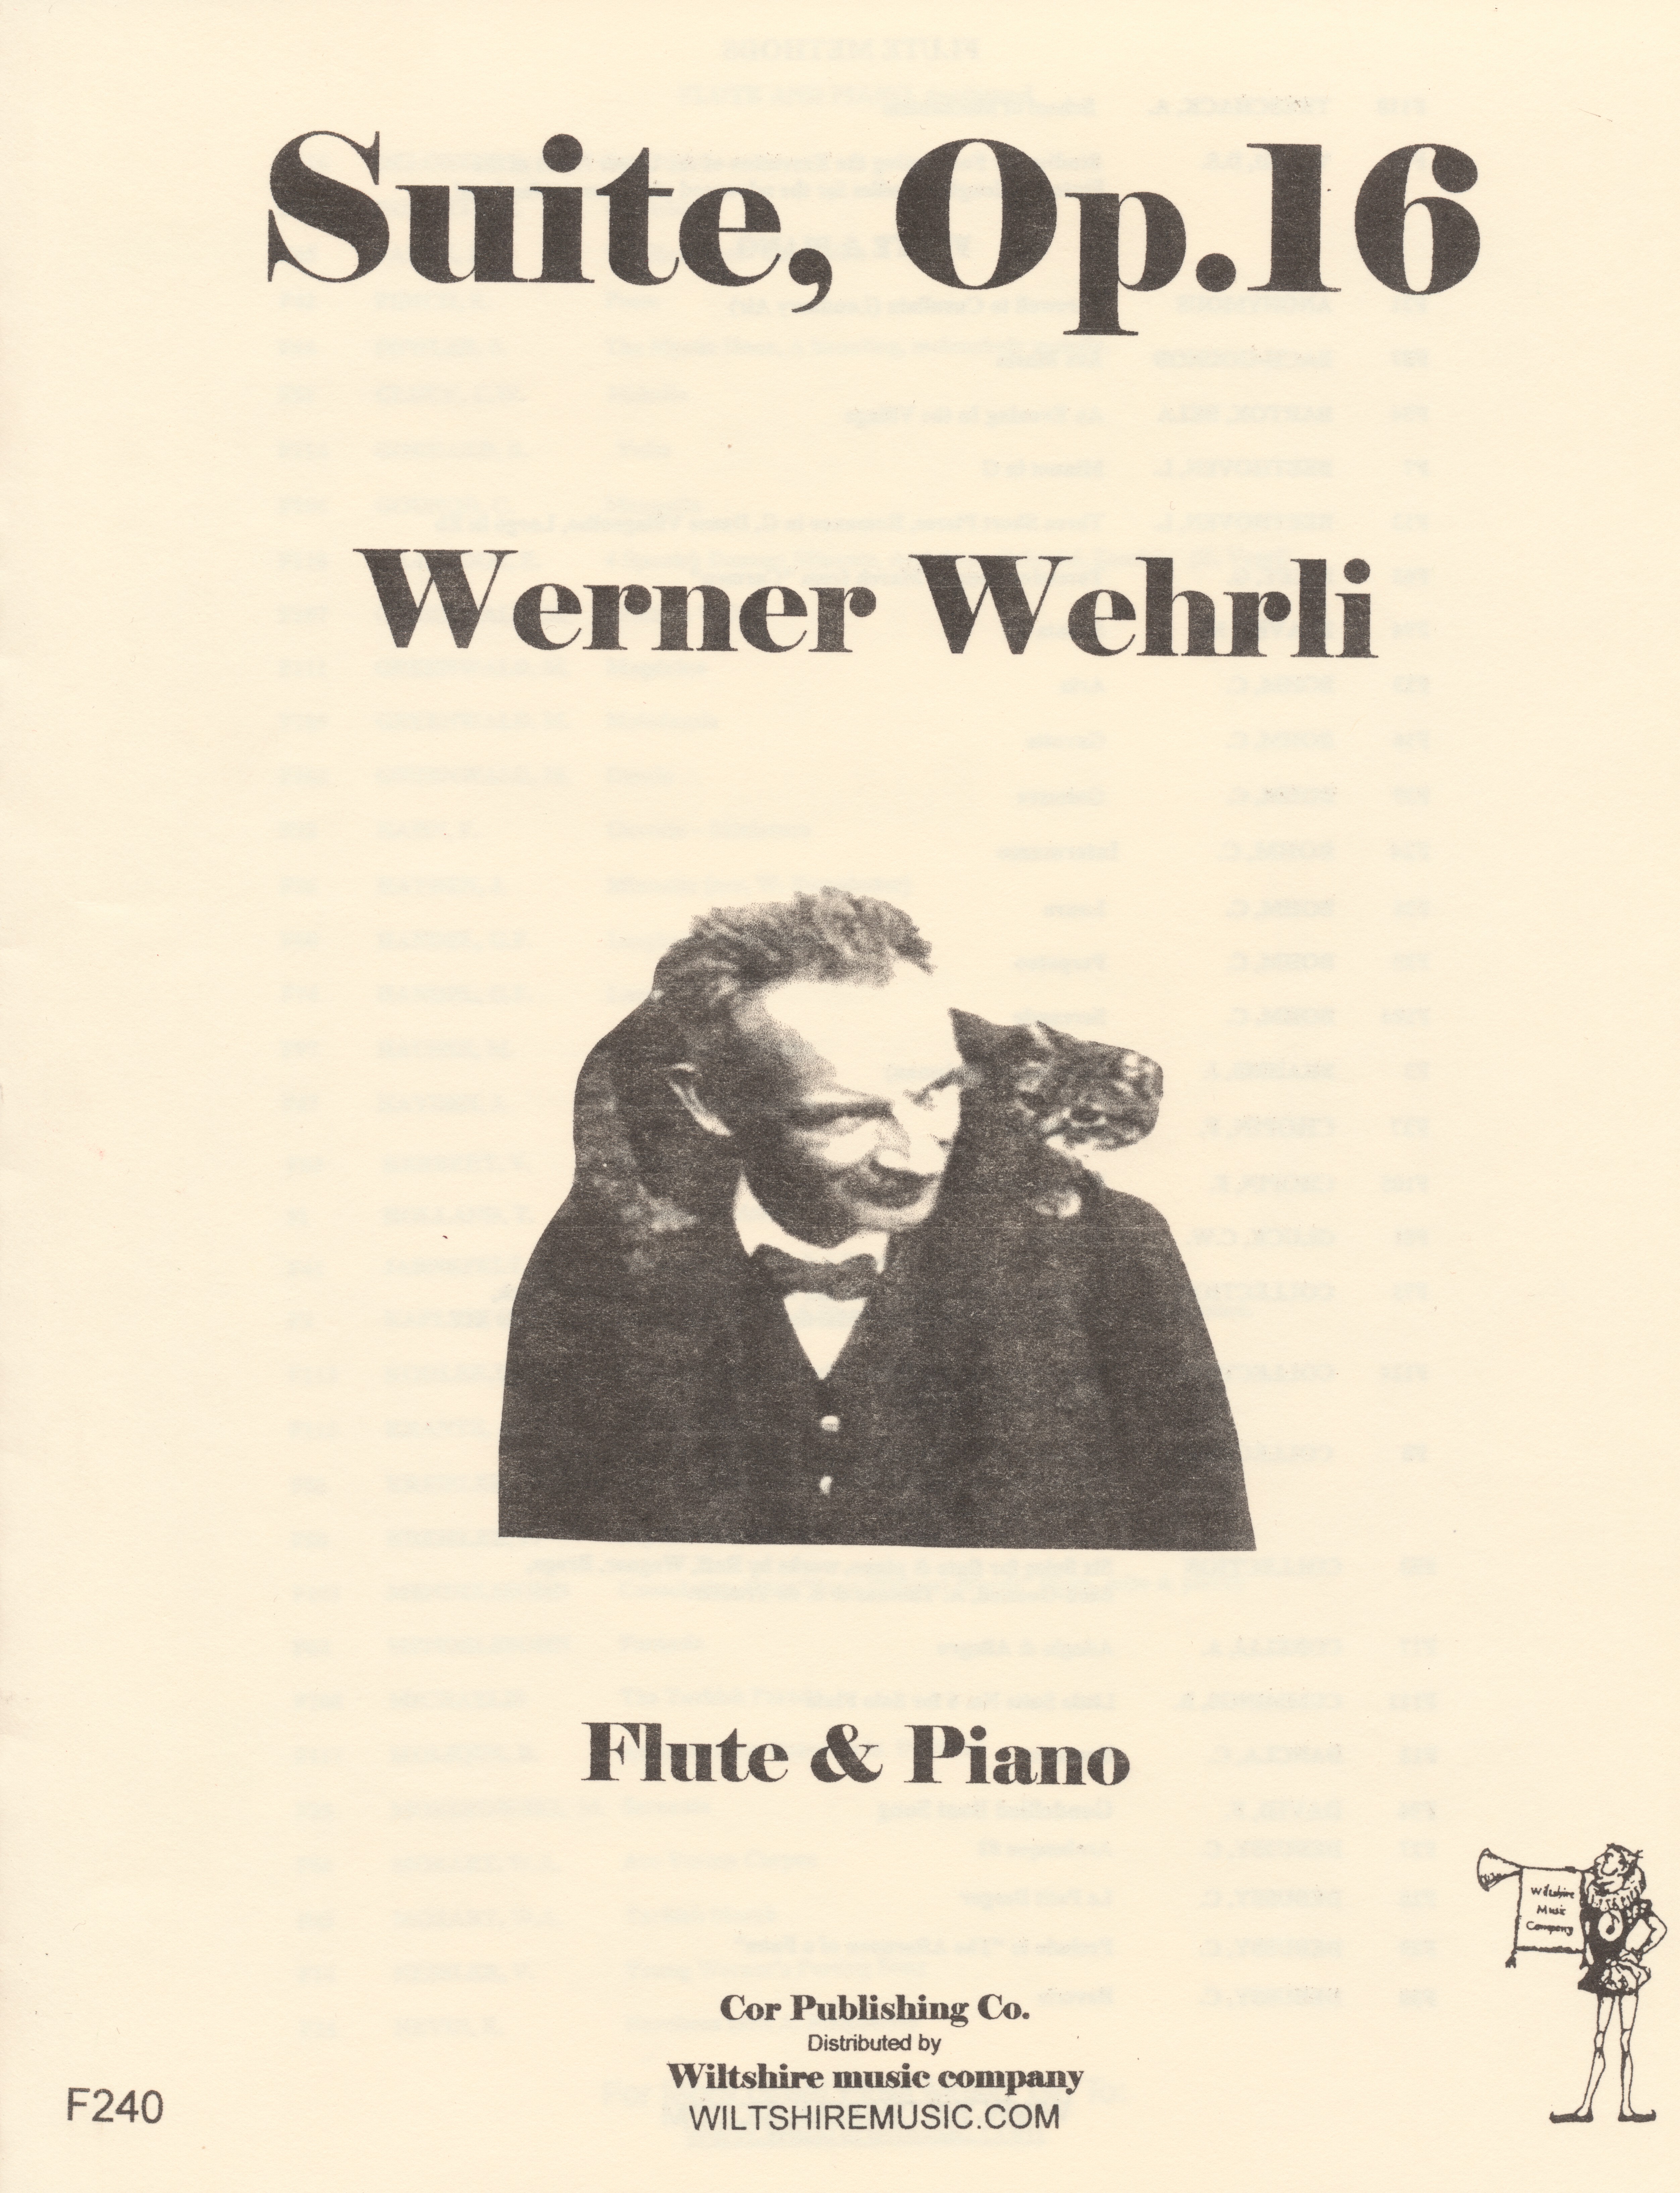 Suite, Op.16 Werner Wehrli, flute & piano